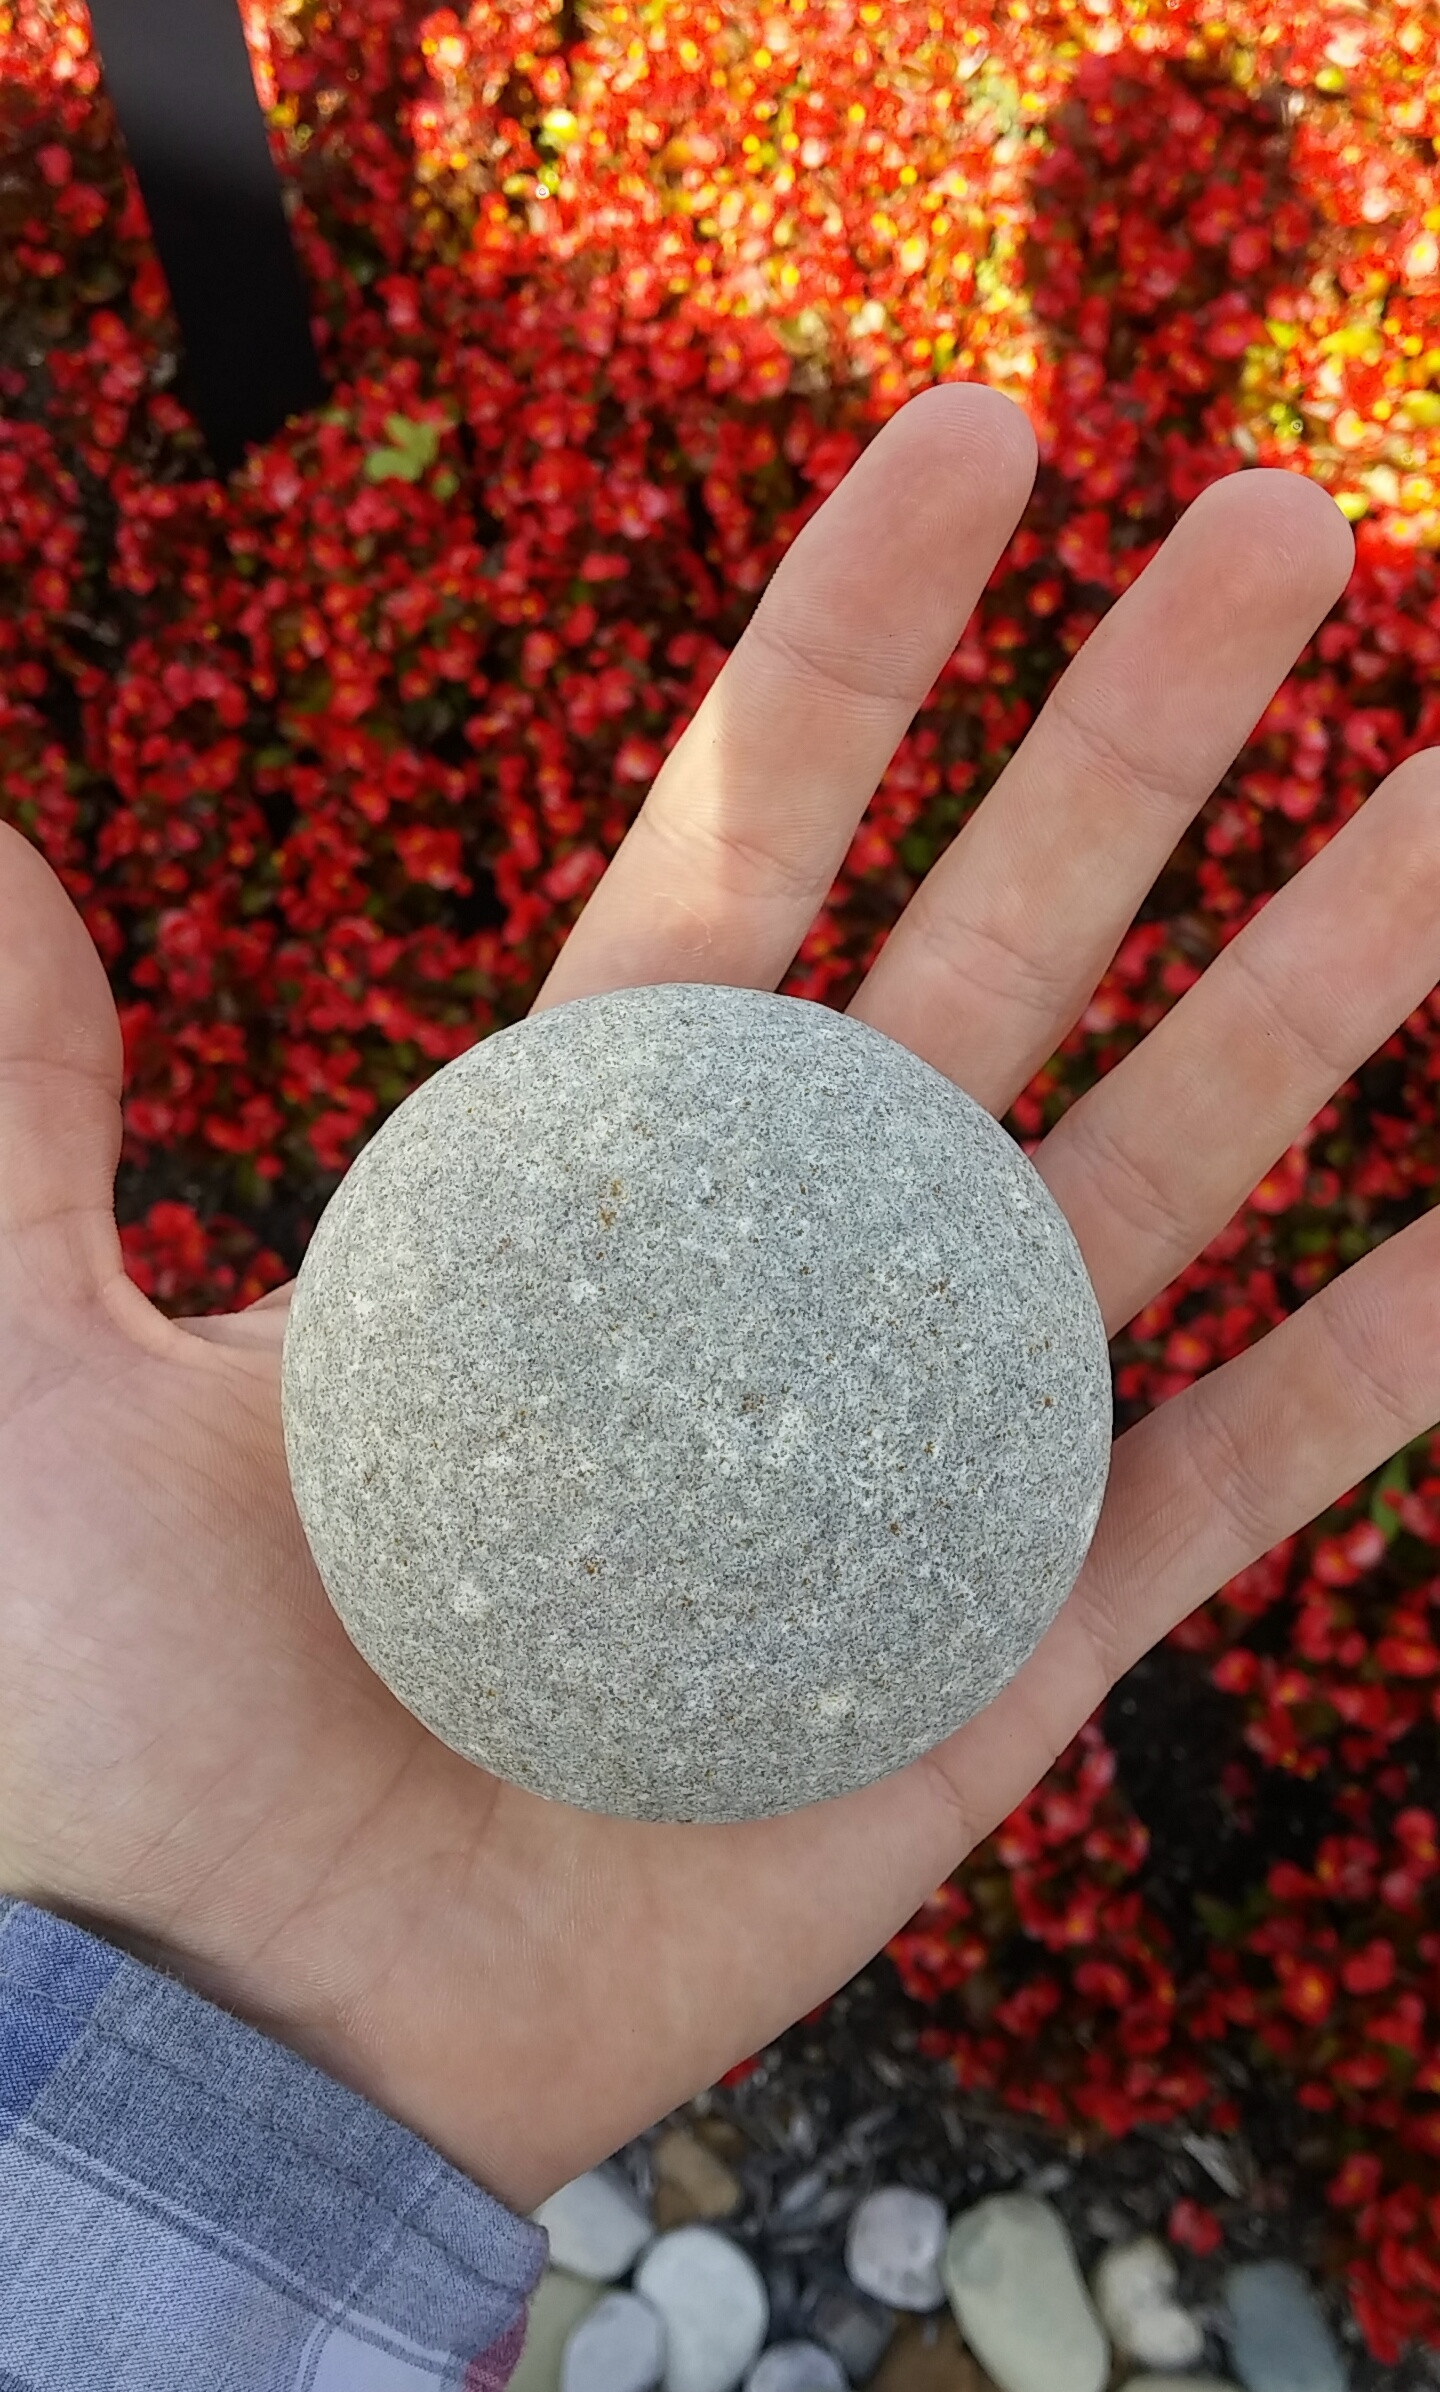 Perfect round. Круглый камень. Идеально круглый камень. Круглые вещи. Камень круглой формы.